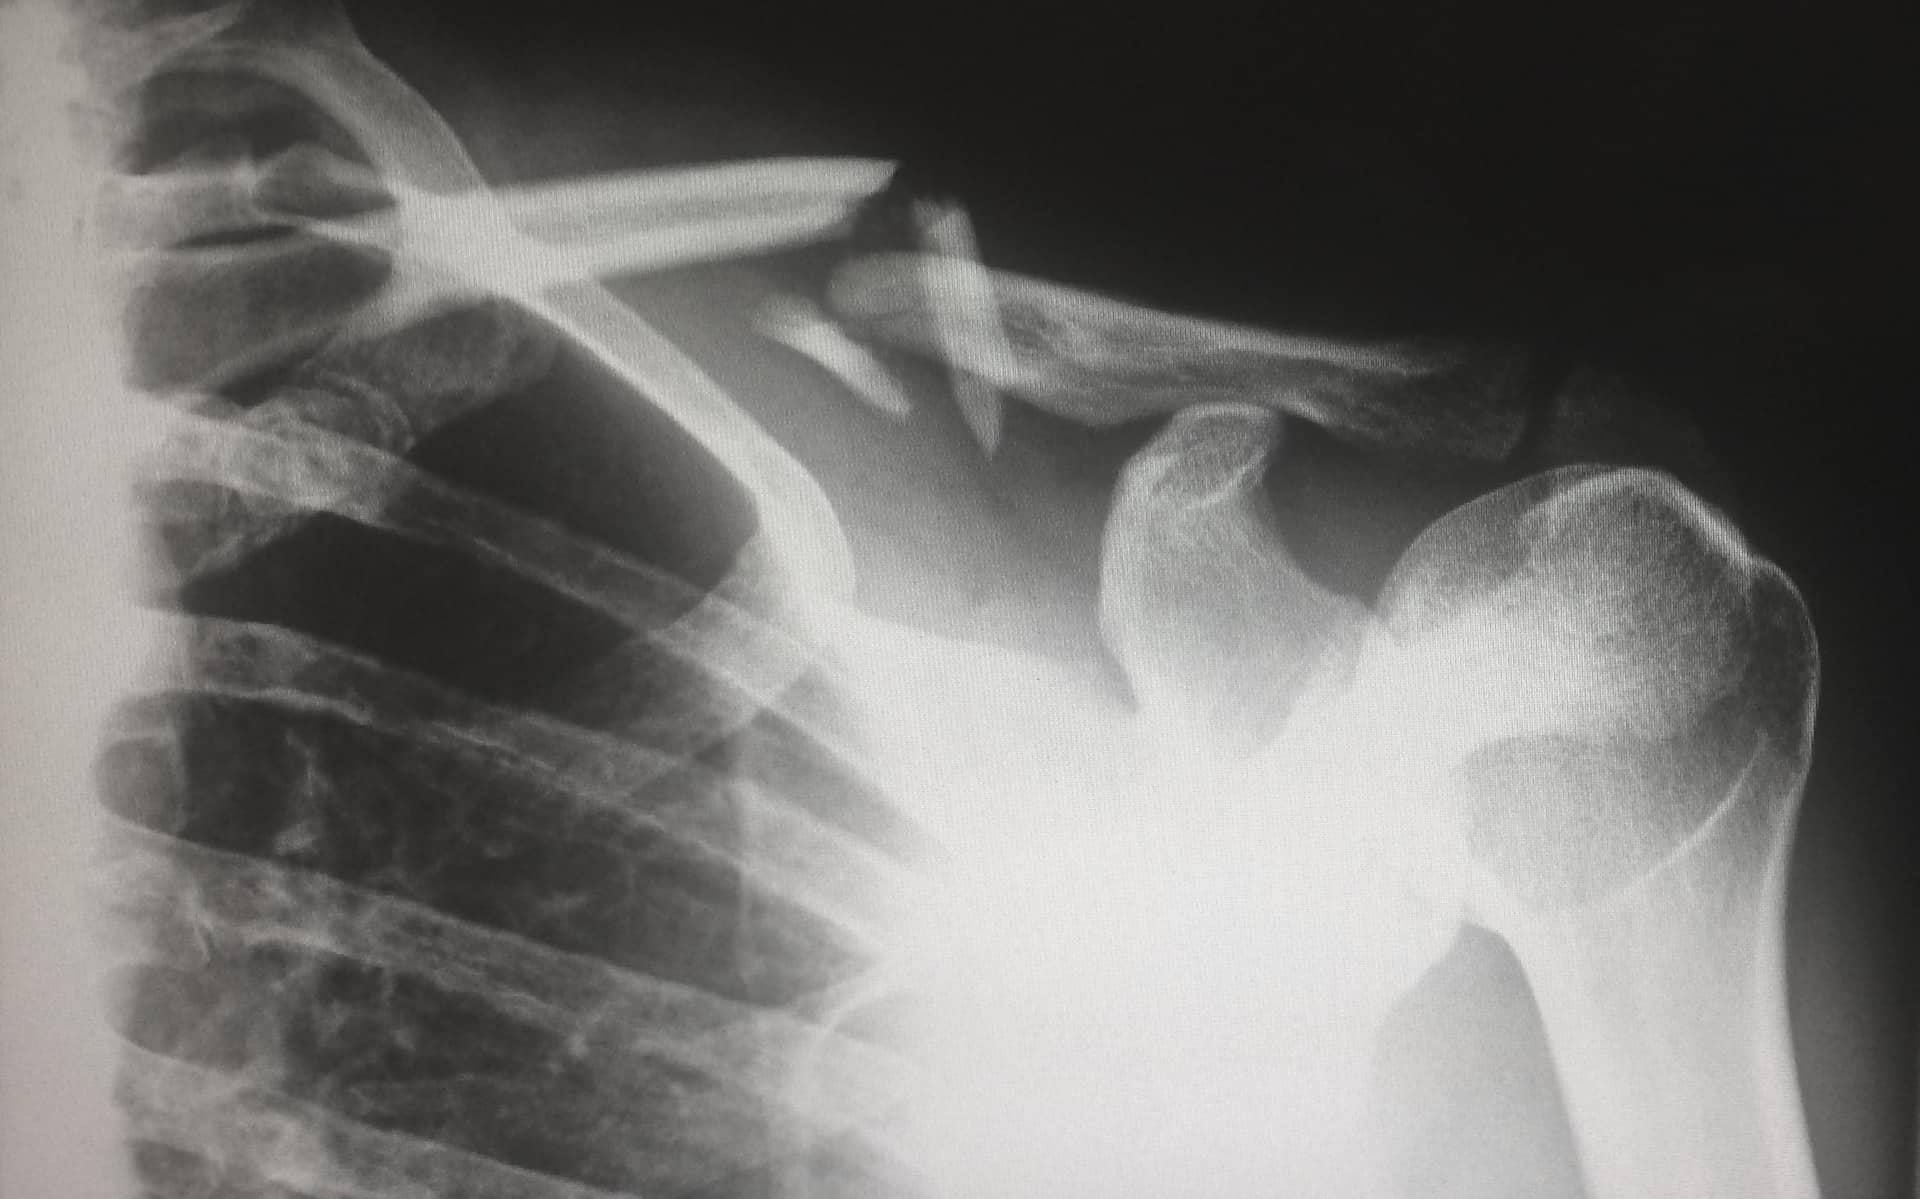 clavicle bone x ray